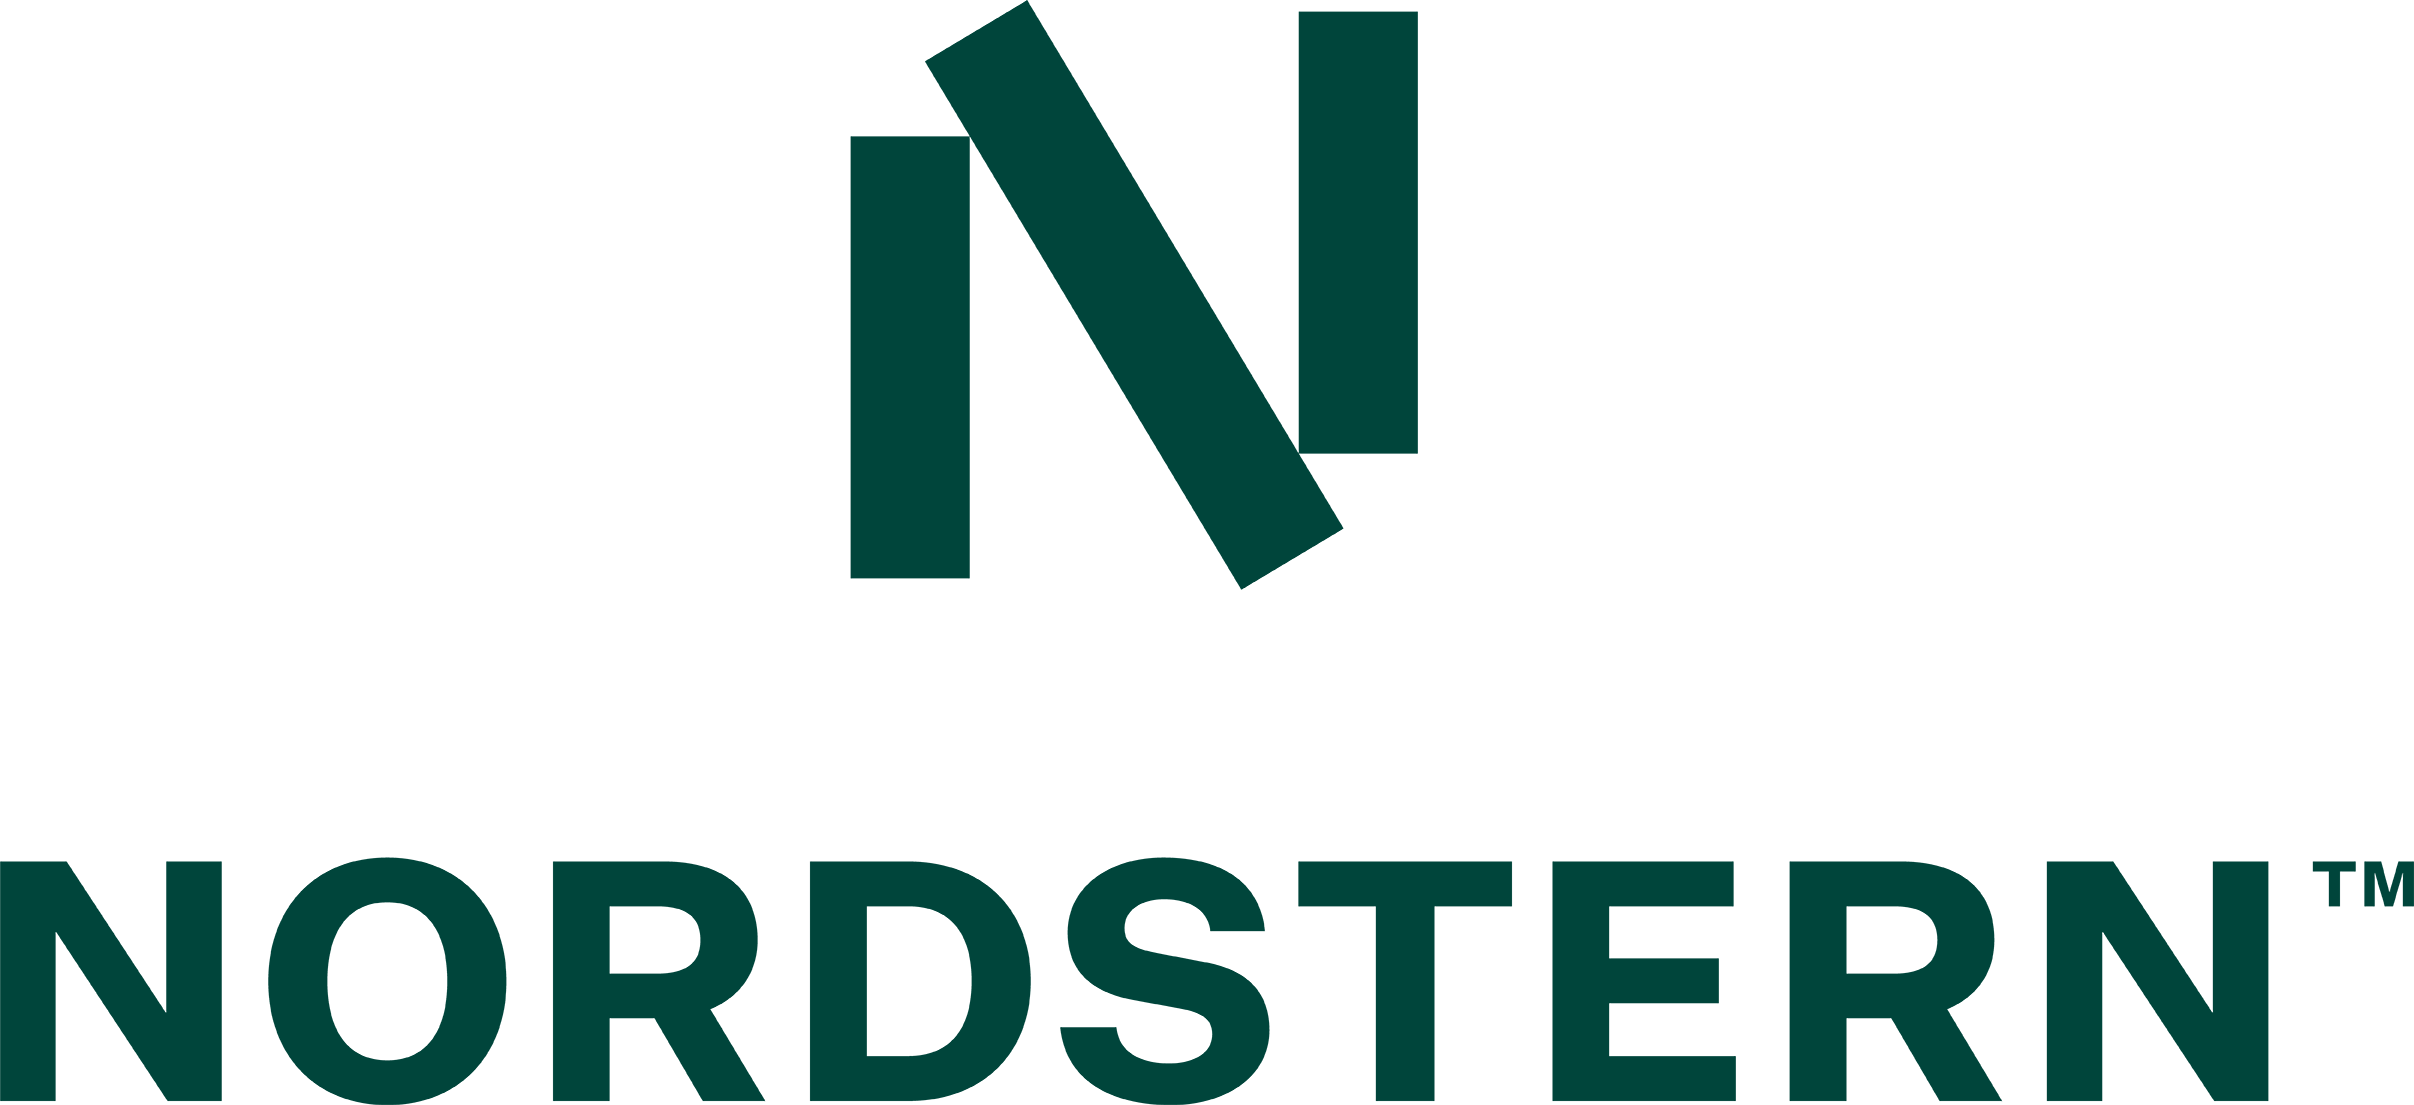 Nordstern logo